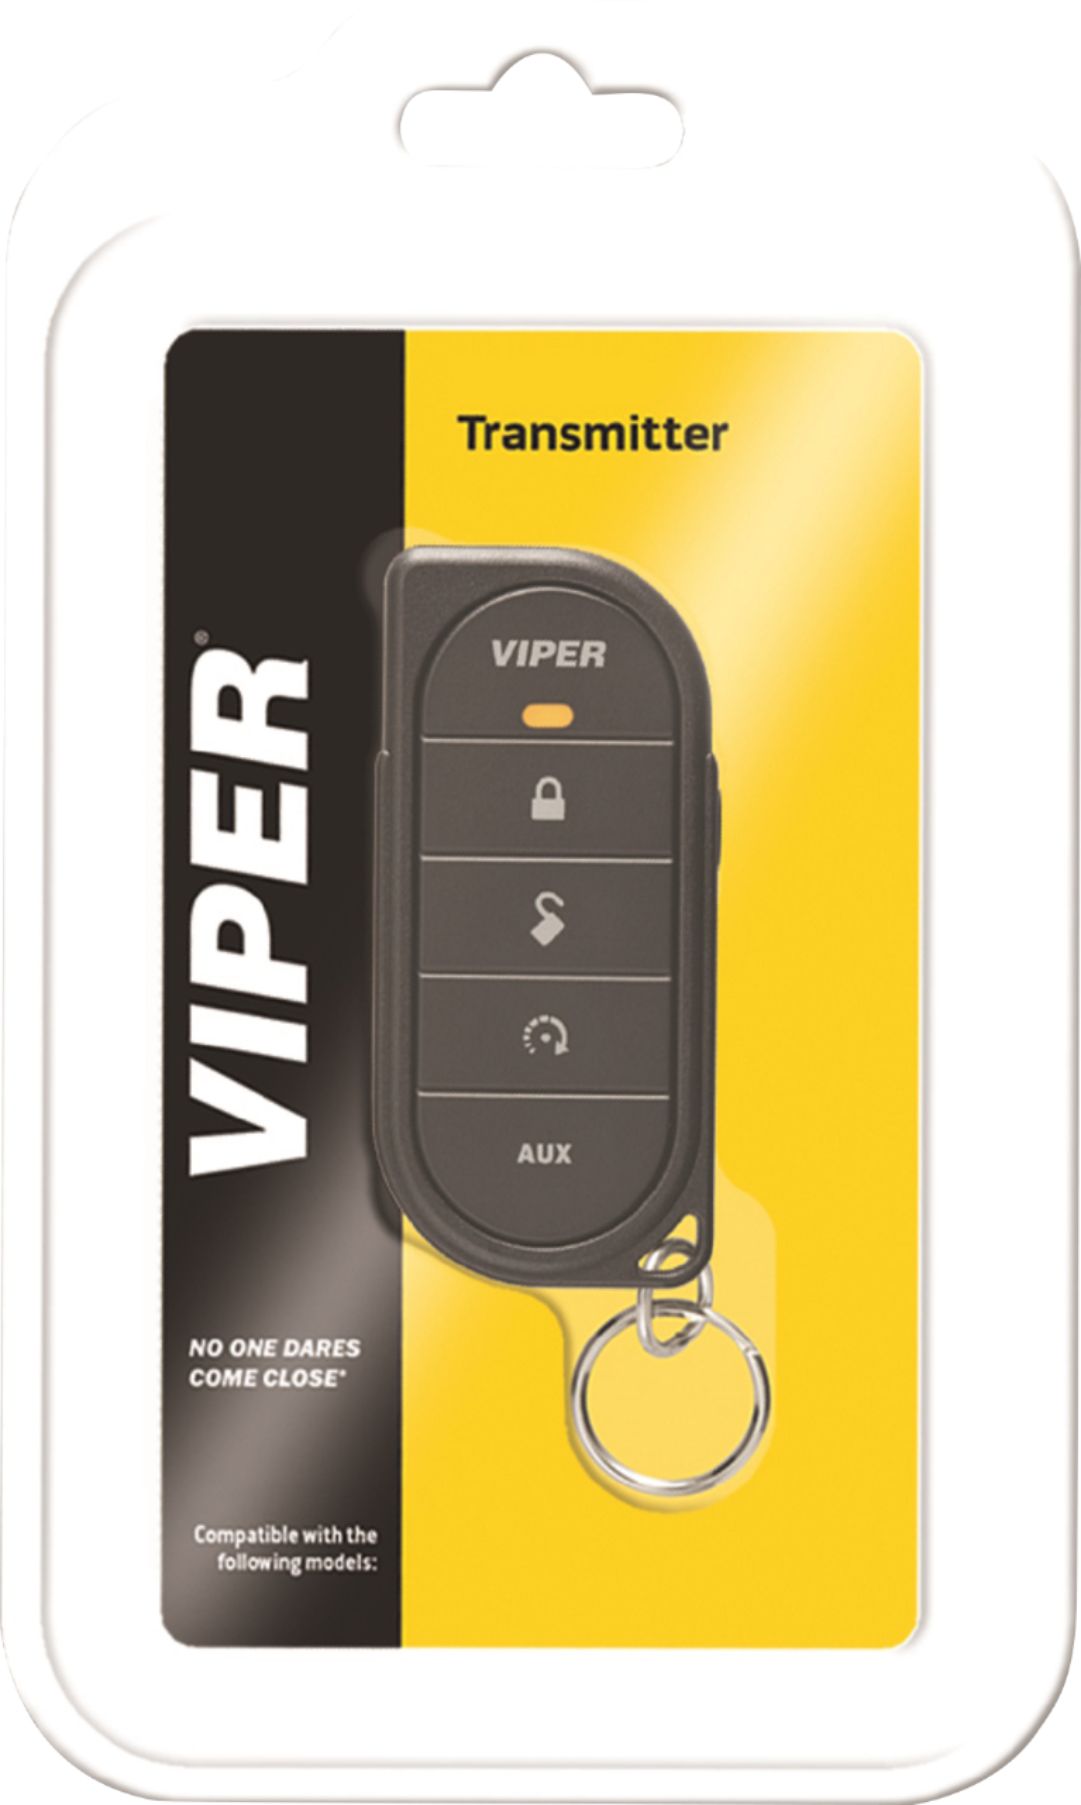 Viper Remote Replacement 7656V 1 Way 5 Button 1/2 Mile Range Car Remote